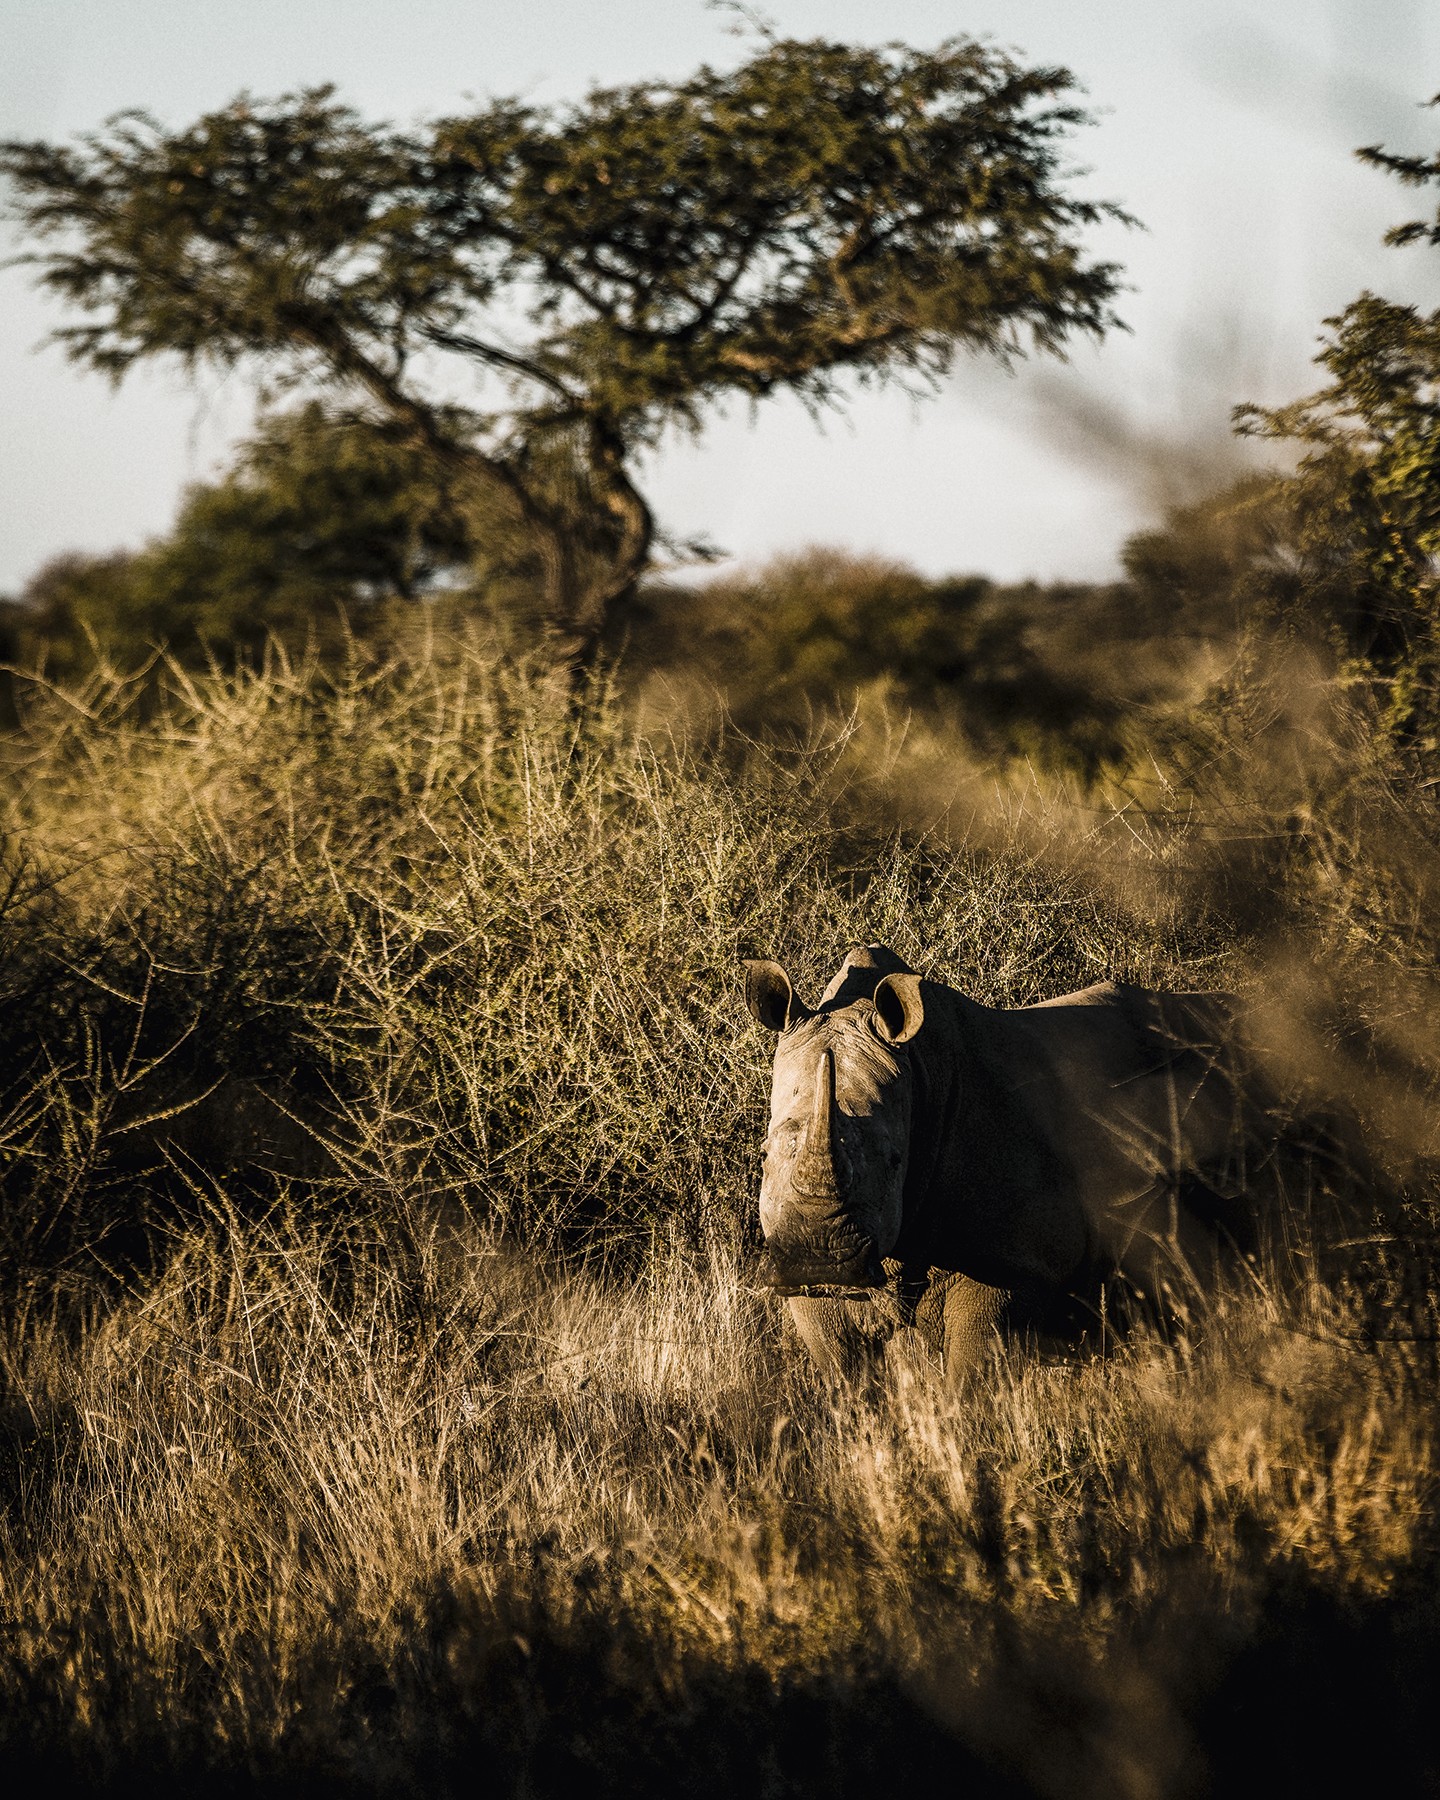 Turismo na Namíbia: você precisa conhecer esse país de paisagens desérticas  (Foto: Michael Turek, Zannier Hotels e divulgação)